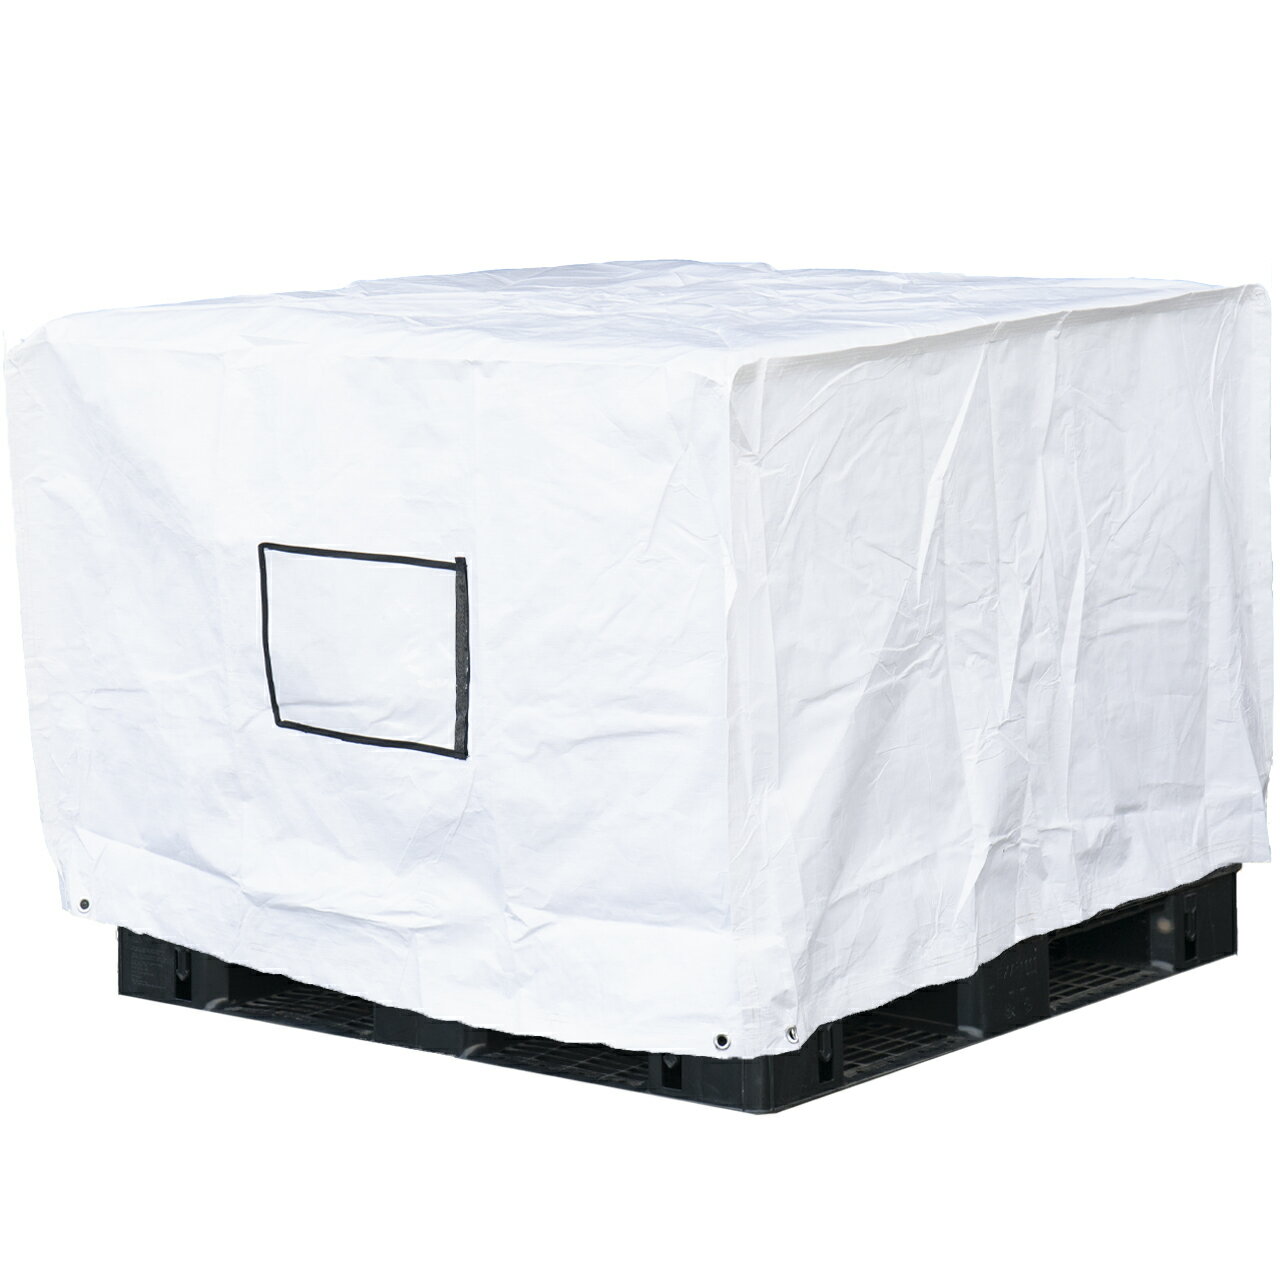 フージンパレットカバー 1.2m×1.2m×H1.0m 高耐候性UVパレットカバー PE 防水 防塵 UVカット 国内パレット 屋内外用 既成サイズ 1.1m×1.1mパレット用